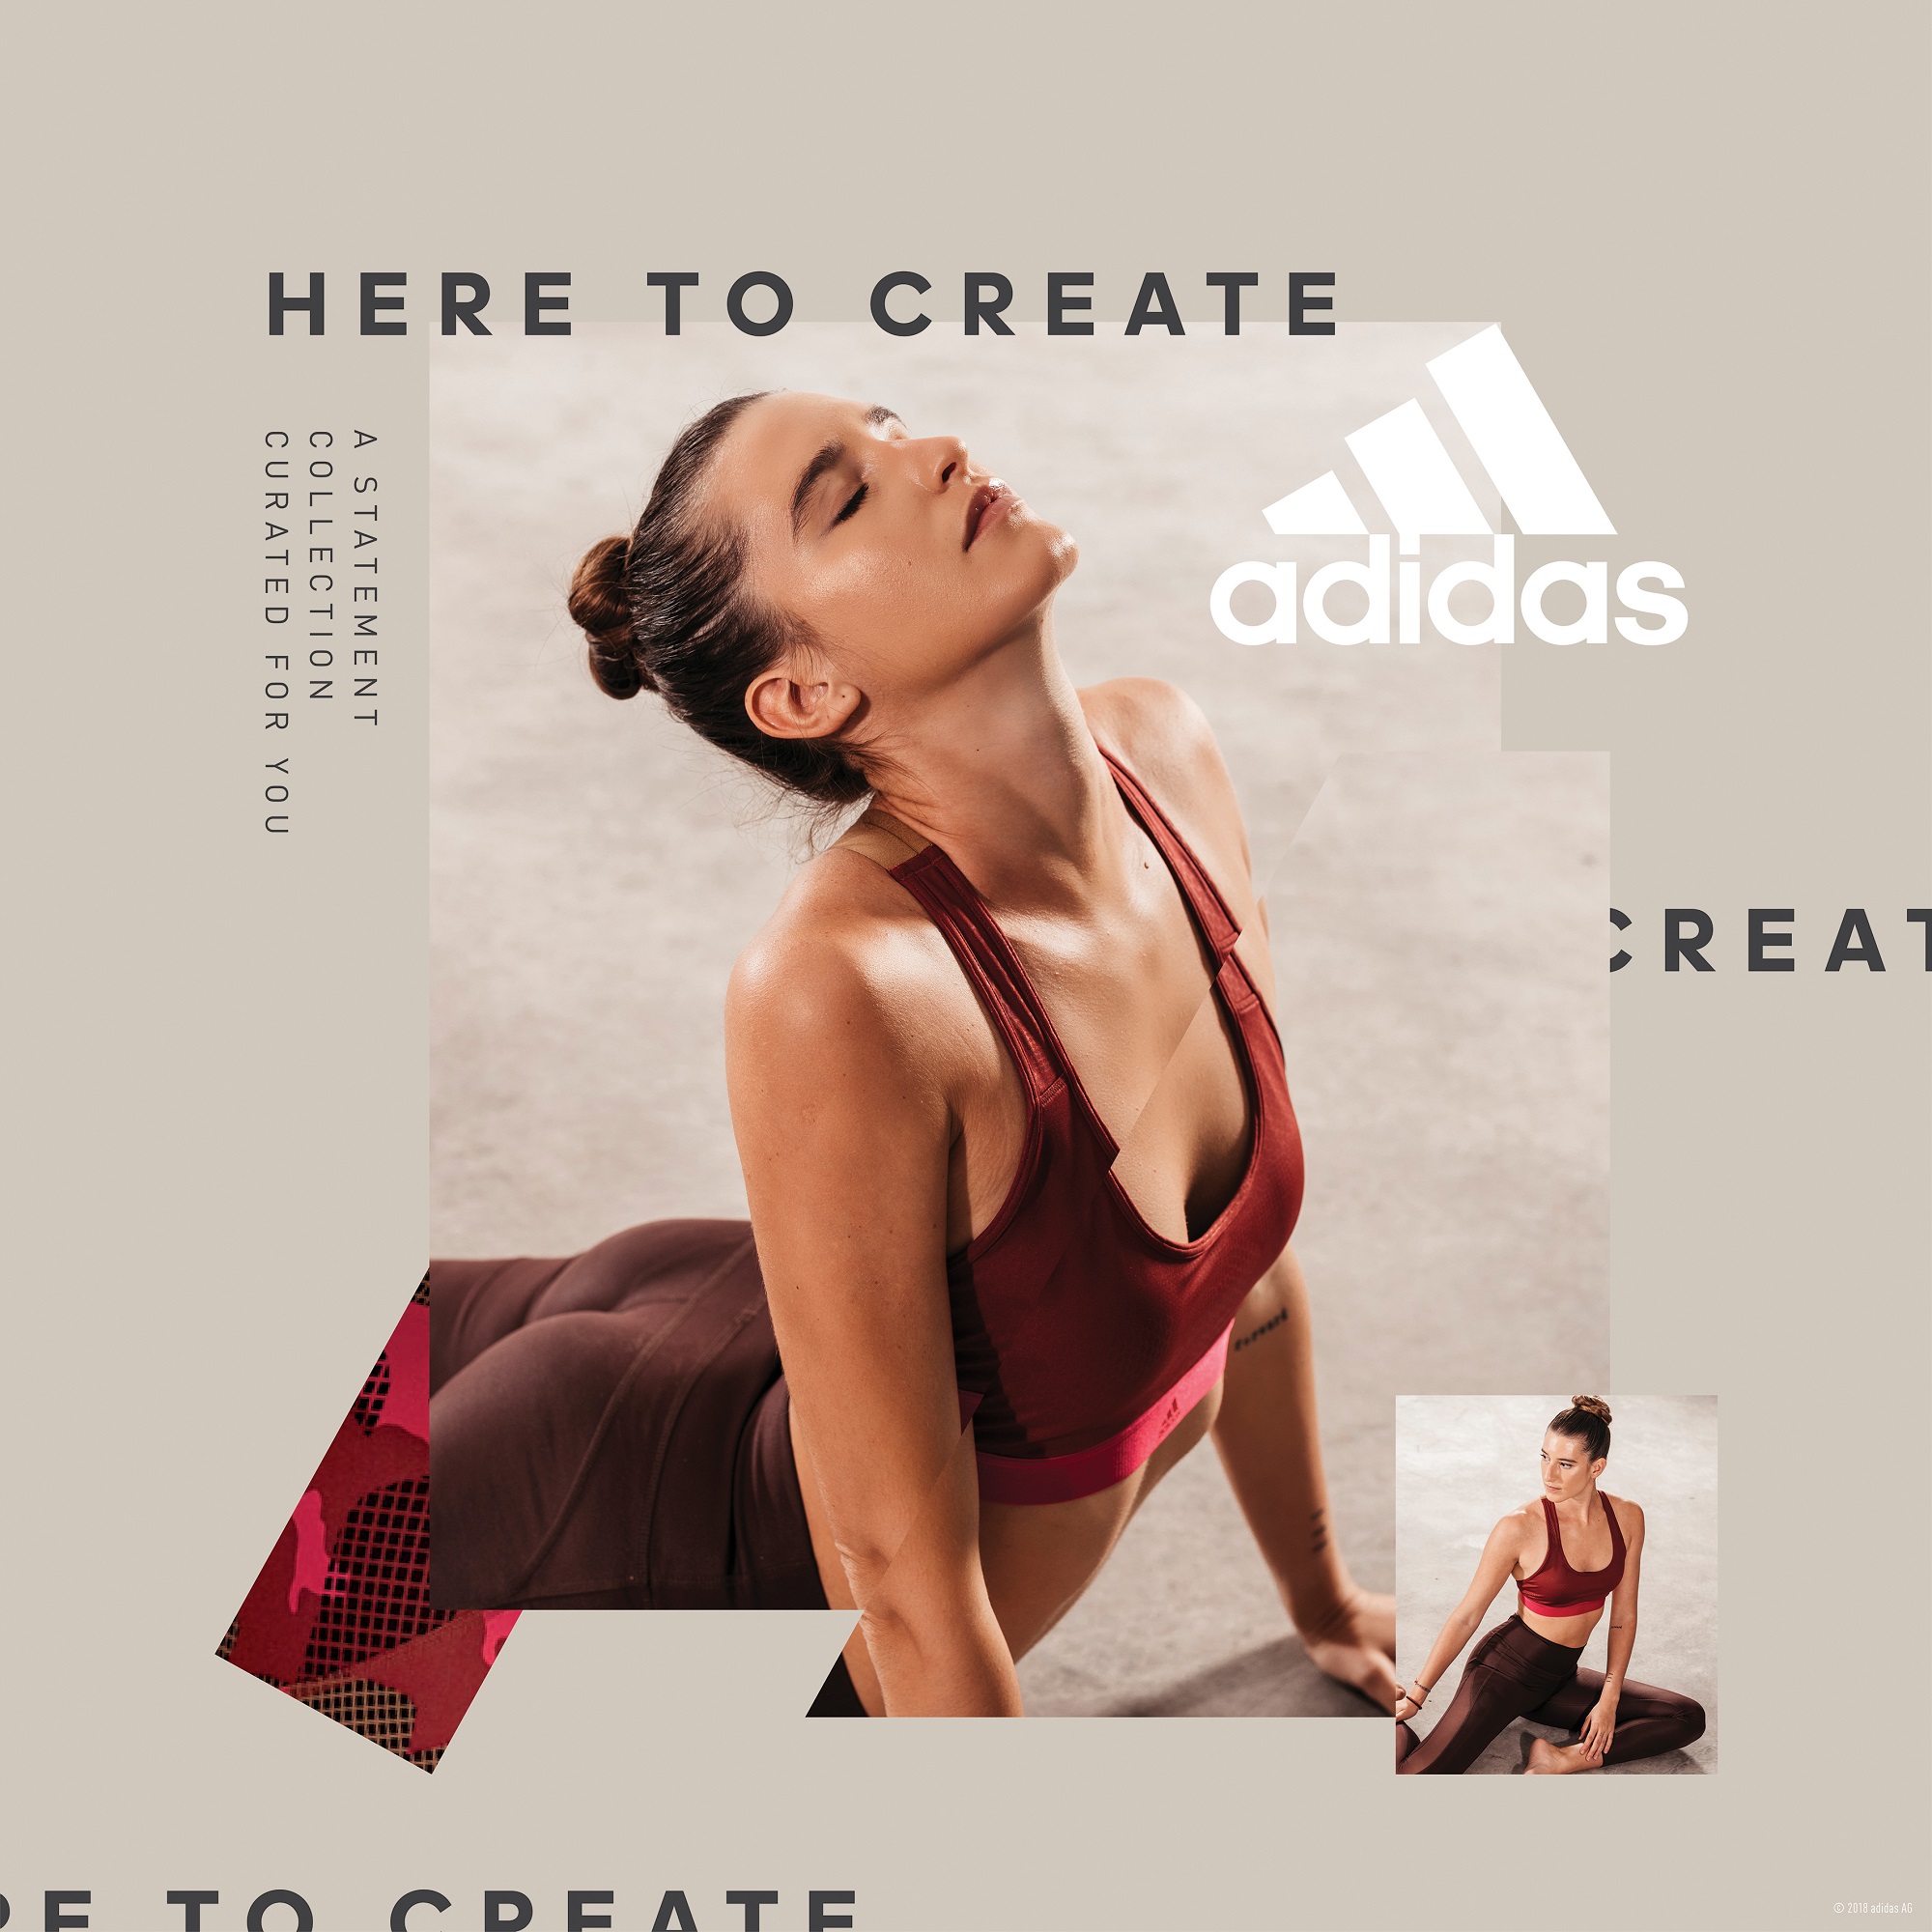 Η νέα limited Statement Collection των adidas Women υποστηρίζει τις γυναίκες σε κάθε τους προπόνηση